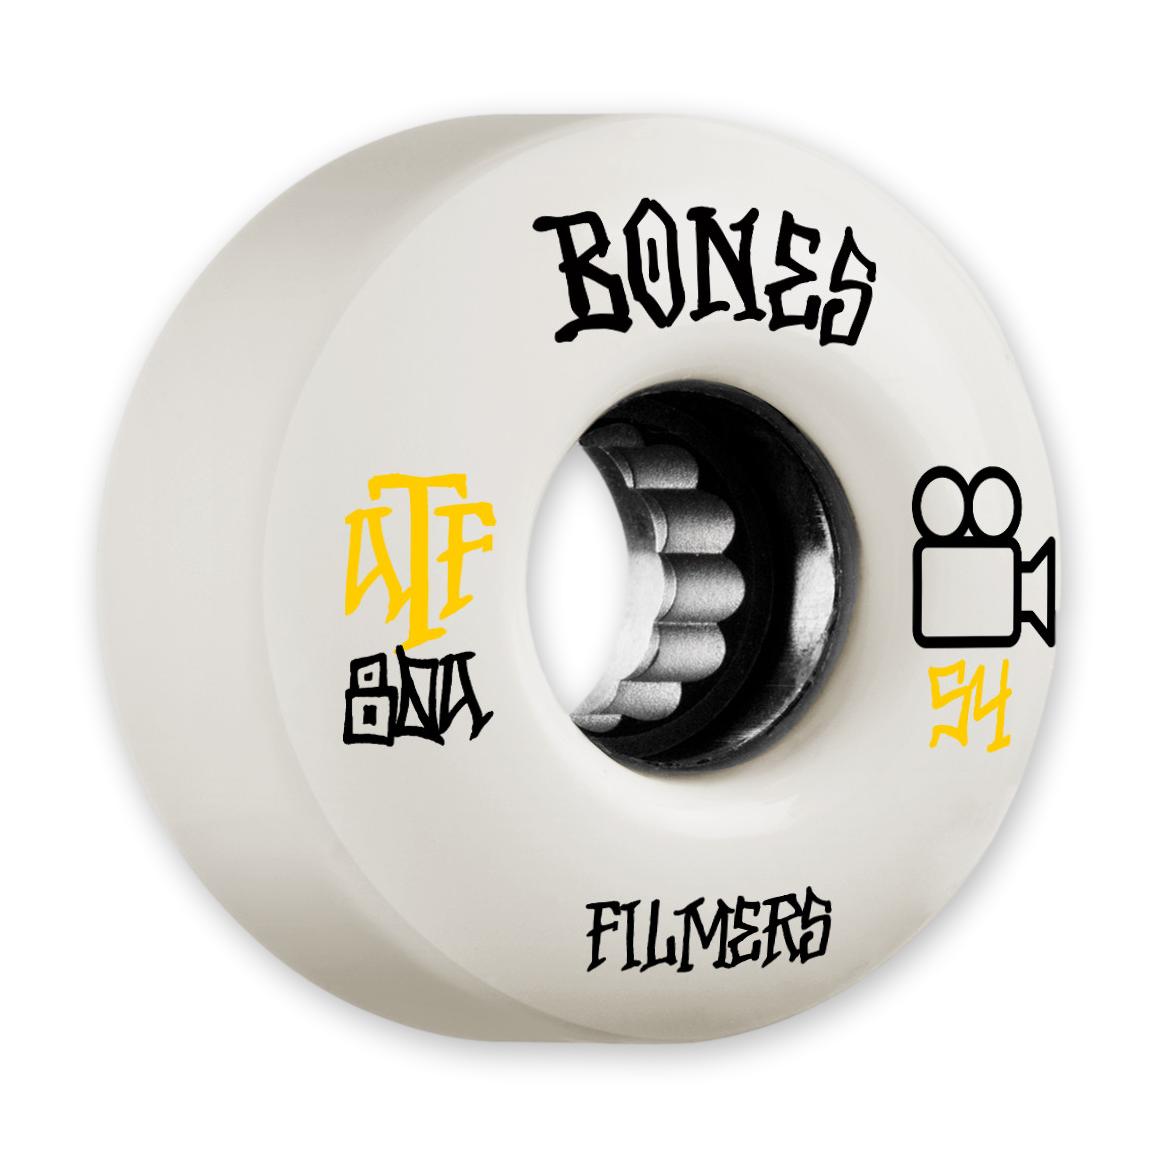 Bones Wheels Filmers Skateboard Wheels